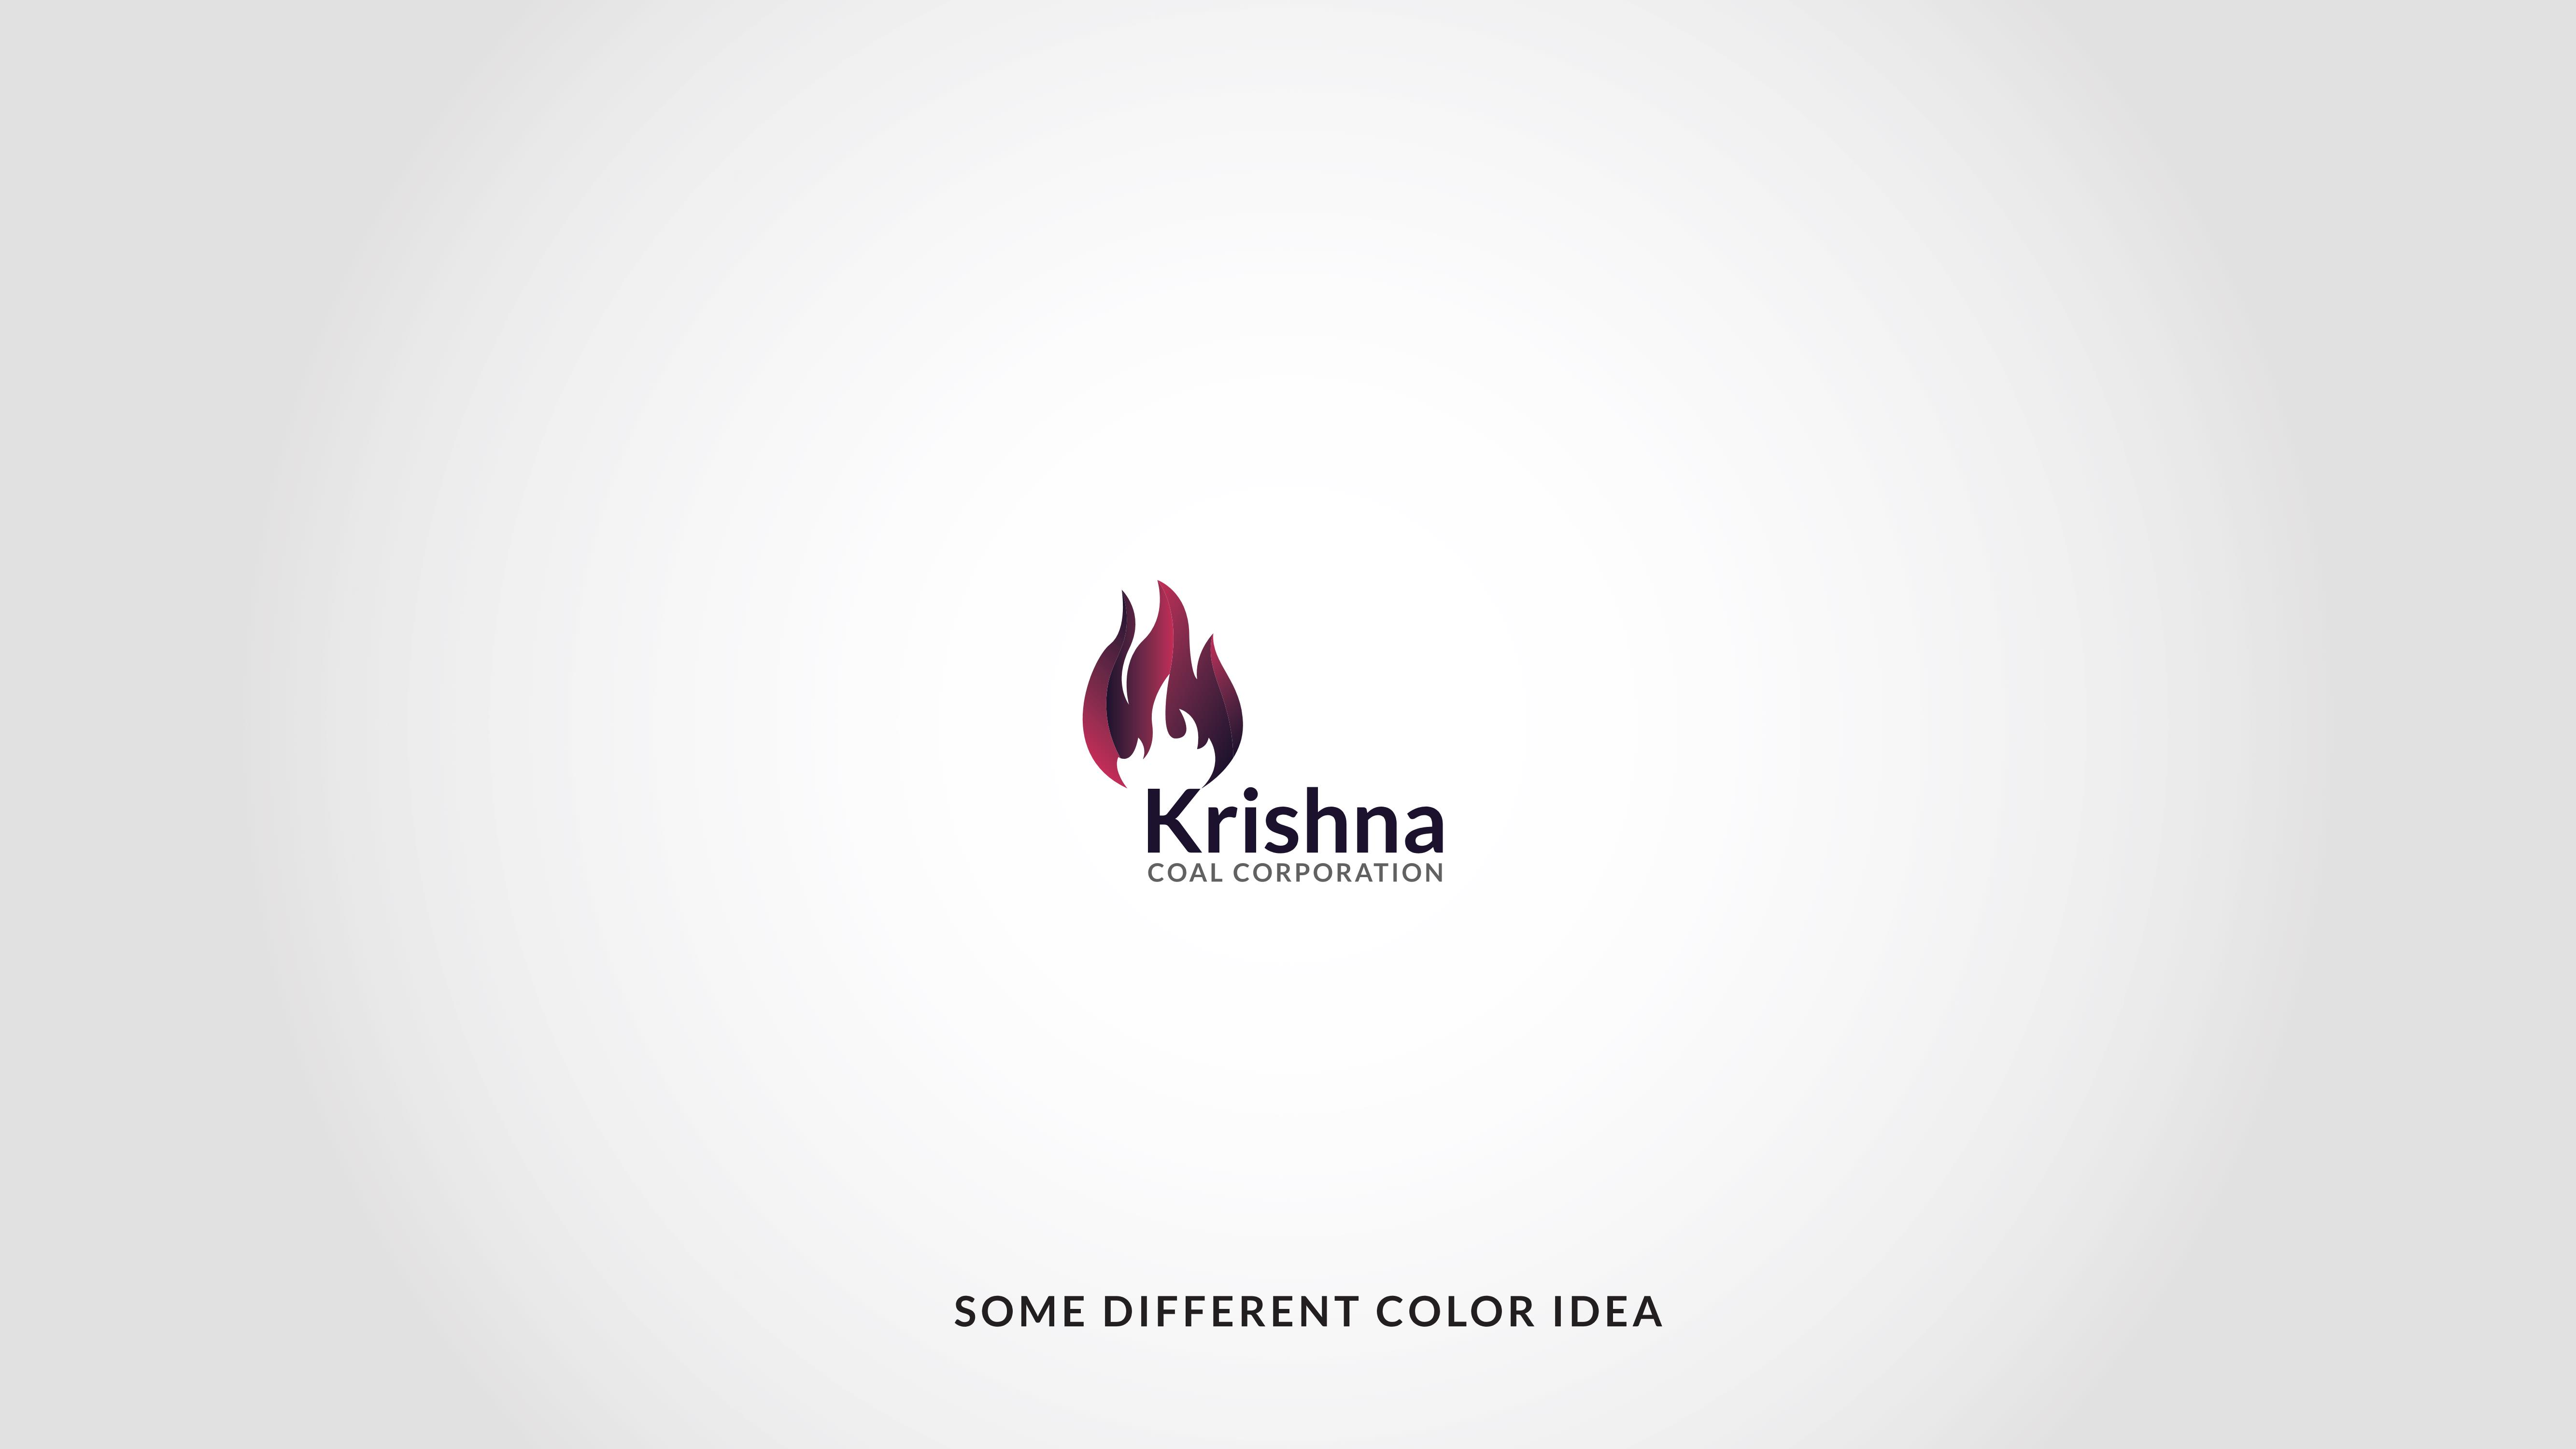 Krishna Coal Corporation